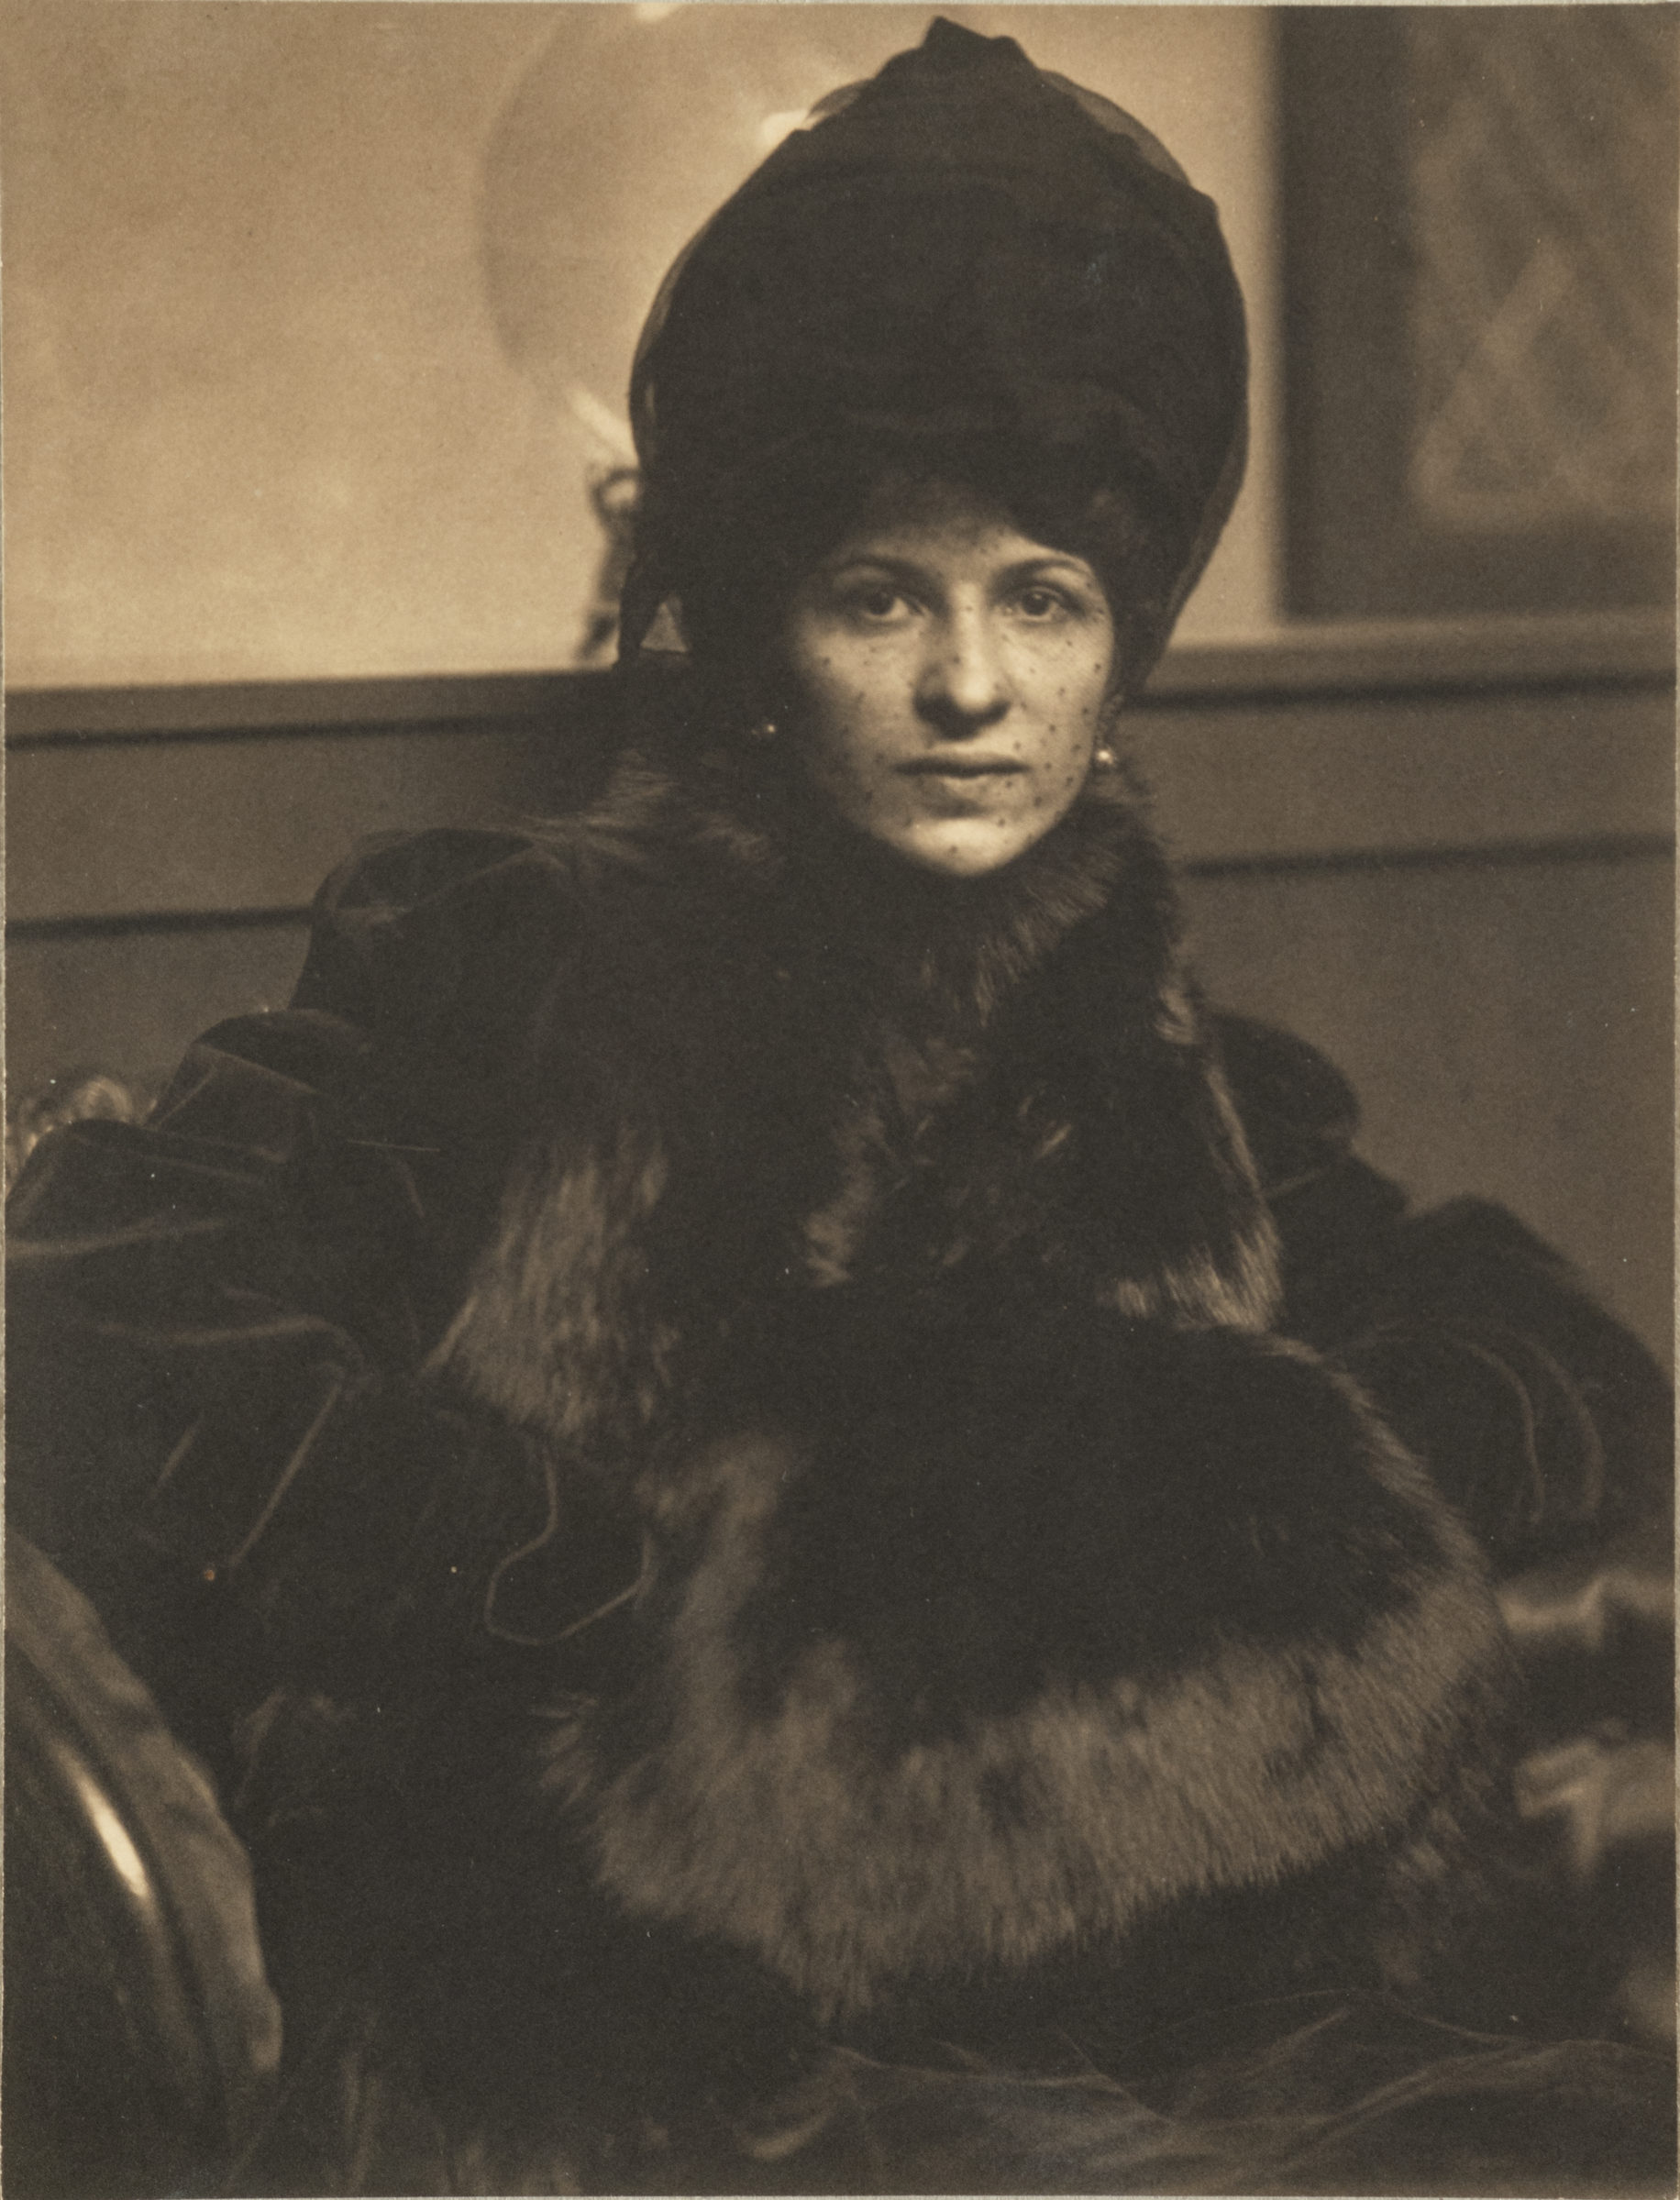 Ritratto di Eulabee Dix by Gertrude Käsebier - circa 1910 - 20 x 15,24 cm 